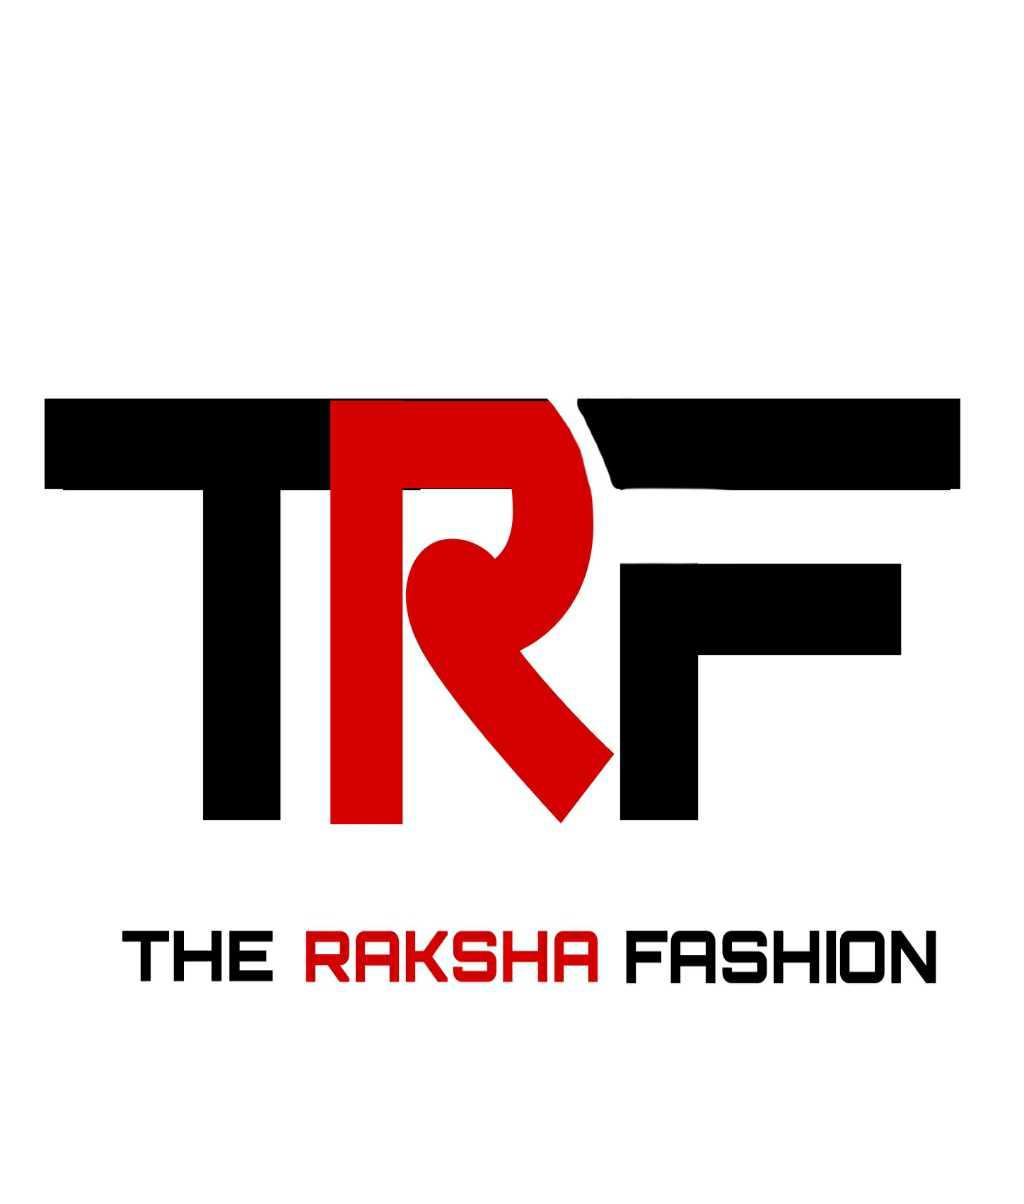 The Raksha Fashion